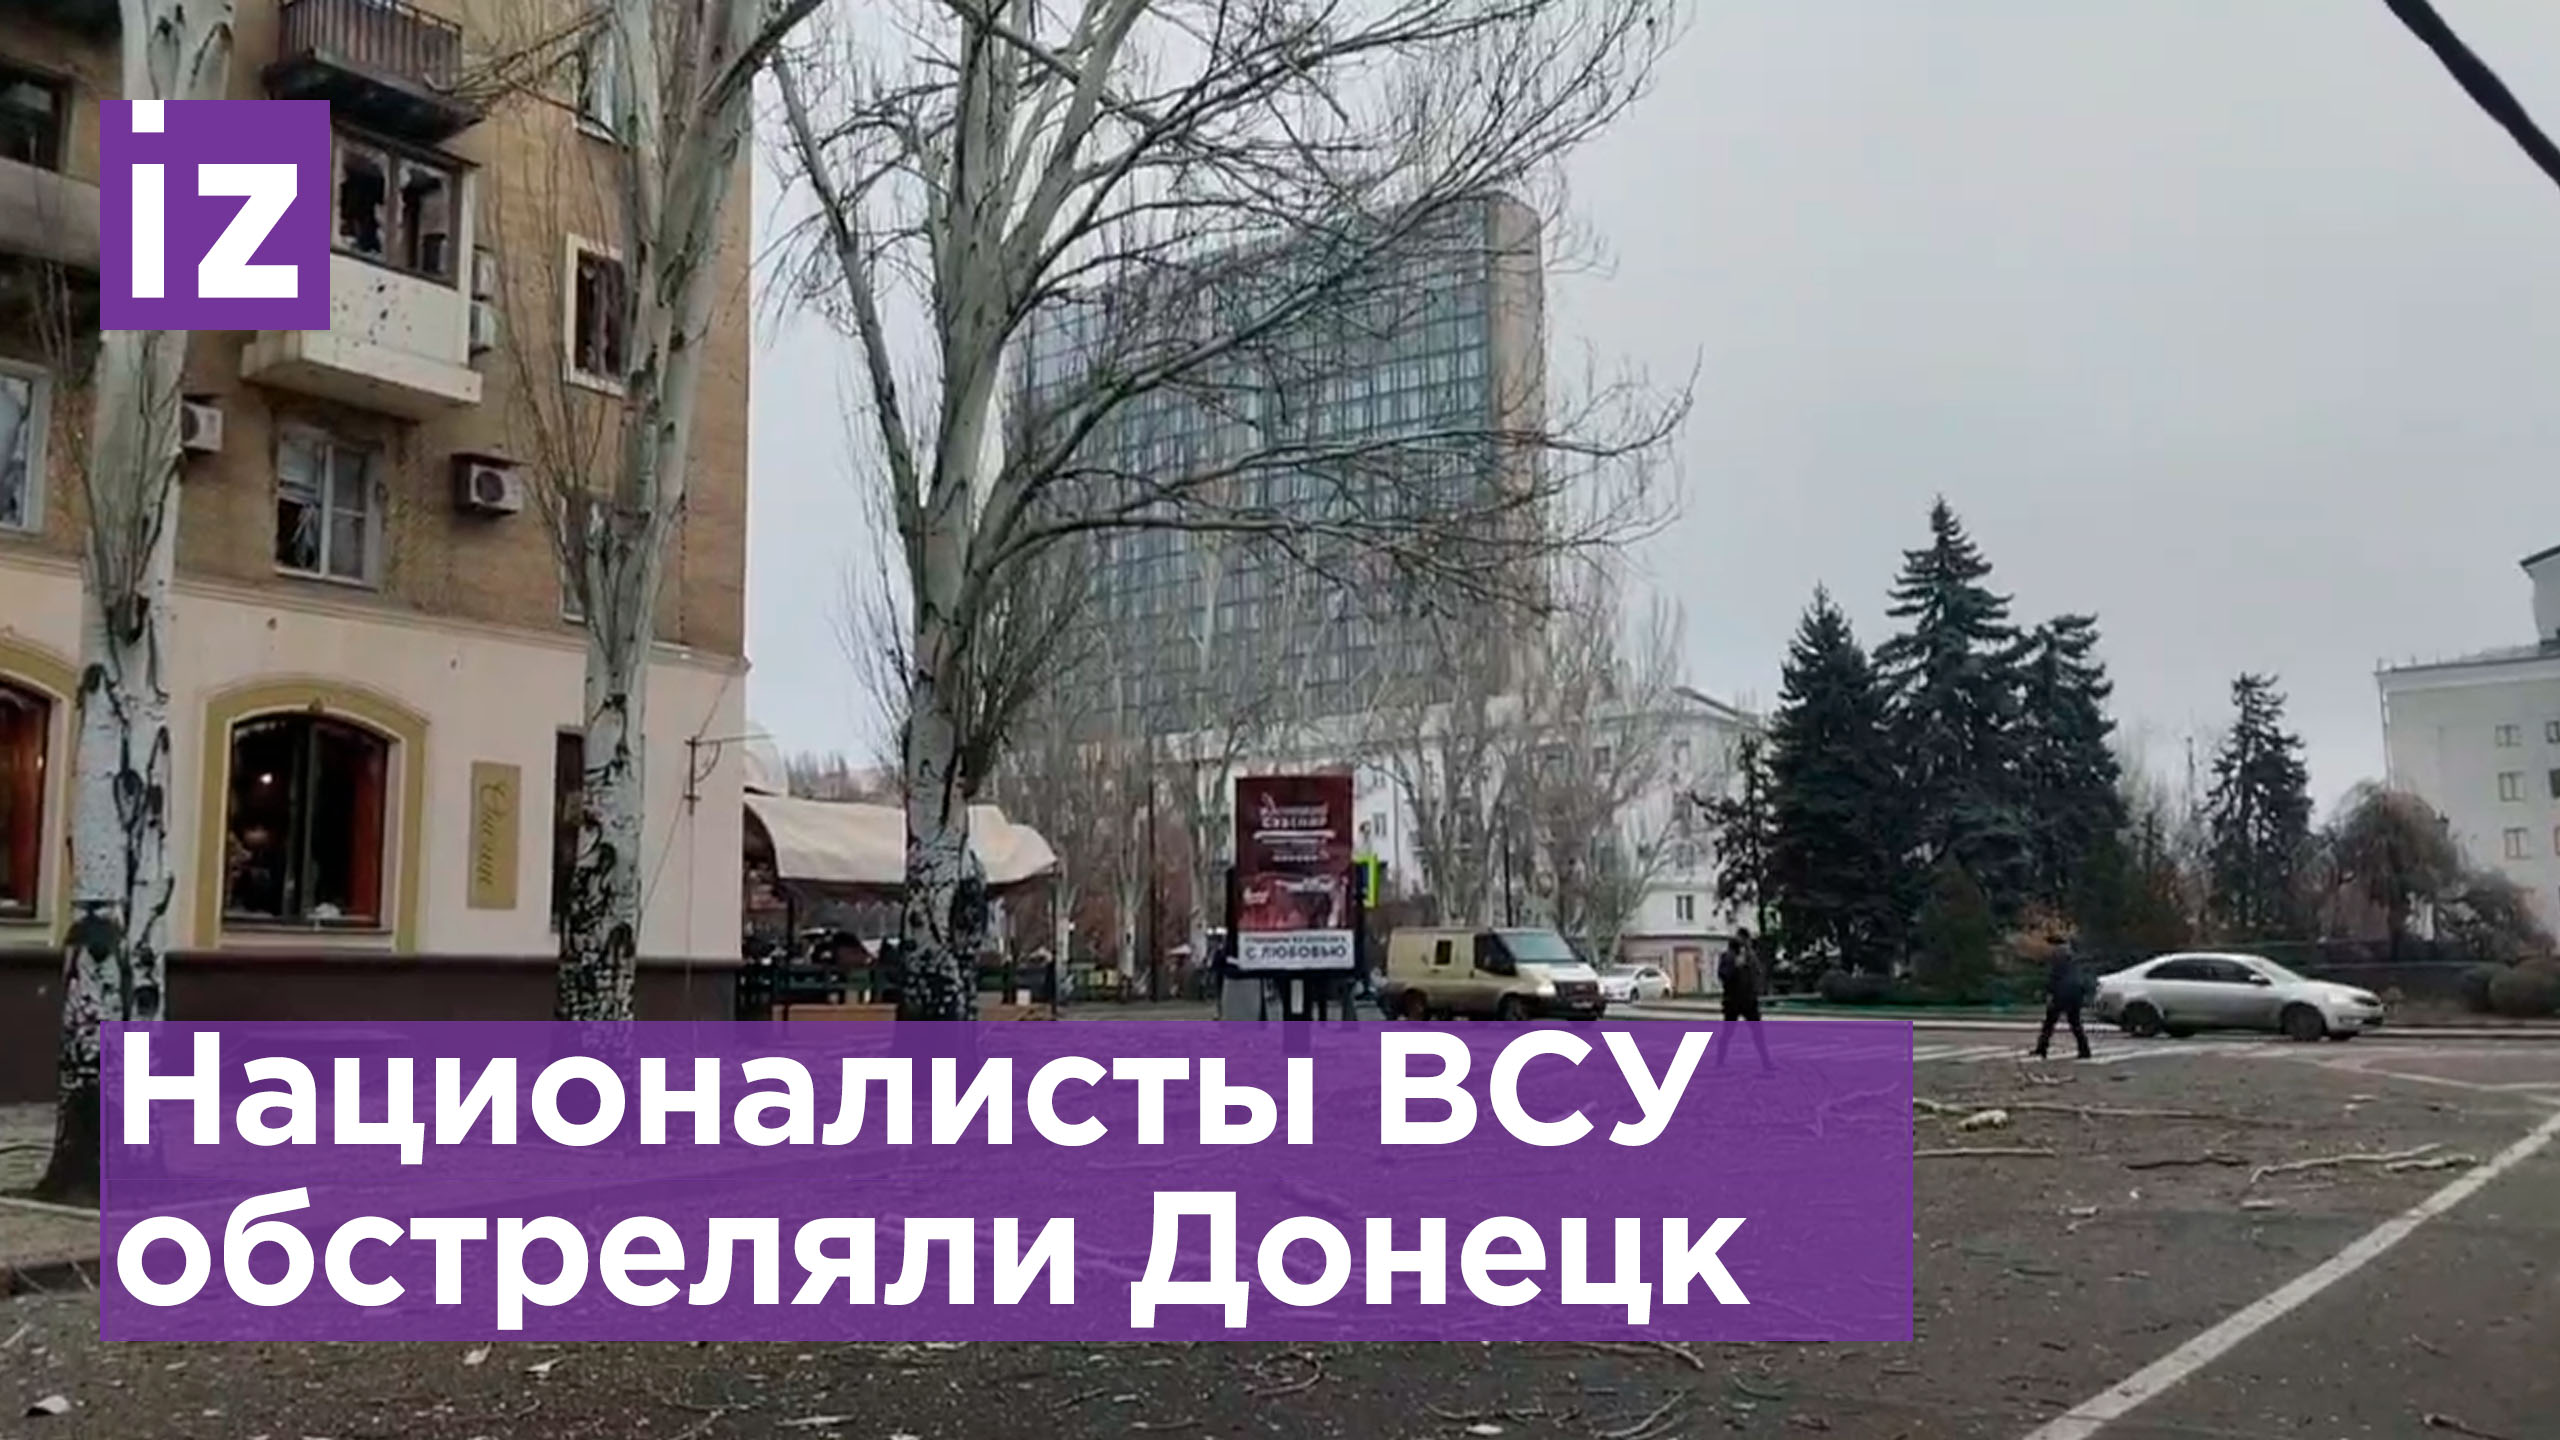 ⚡️ Бульвар Пушкина обстреляли ВСУ в Донецке. Есть пострадавшие